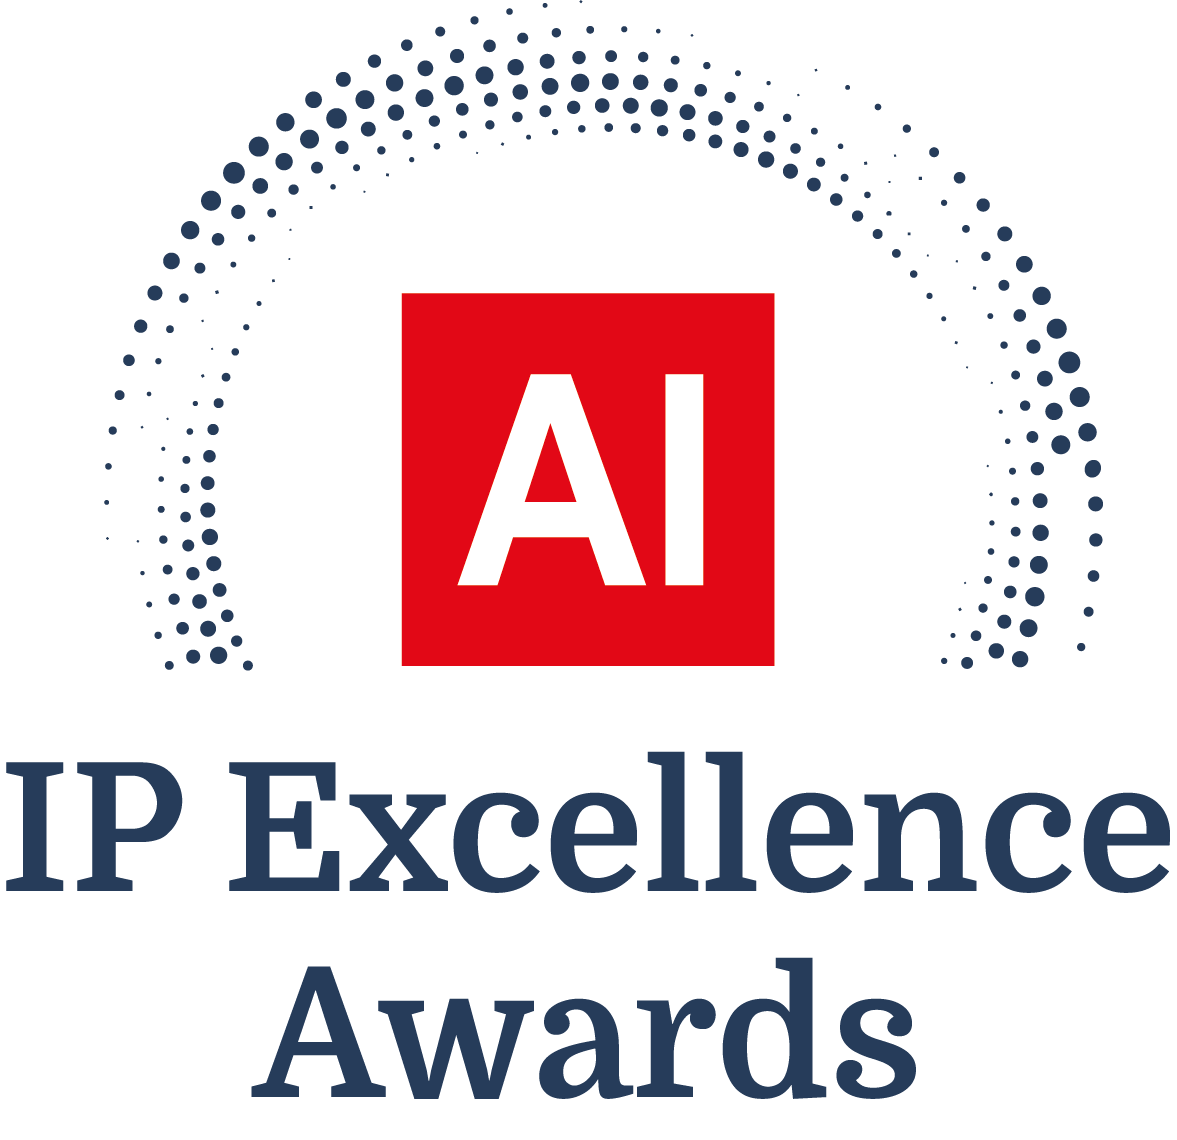 Current Award Logo - Intellectual Property Awards